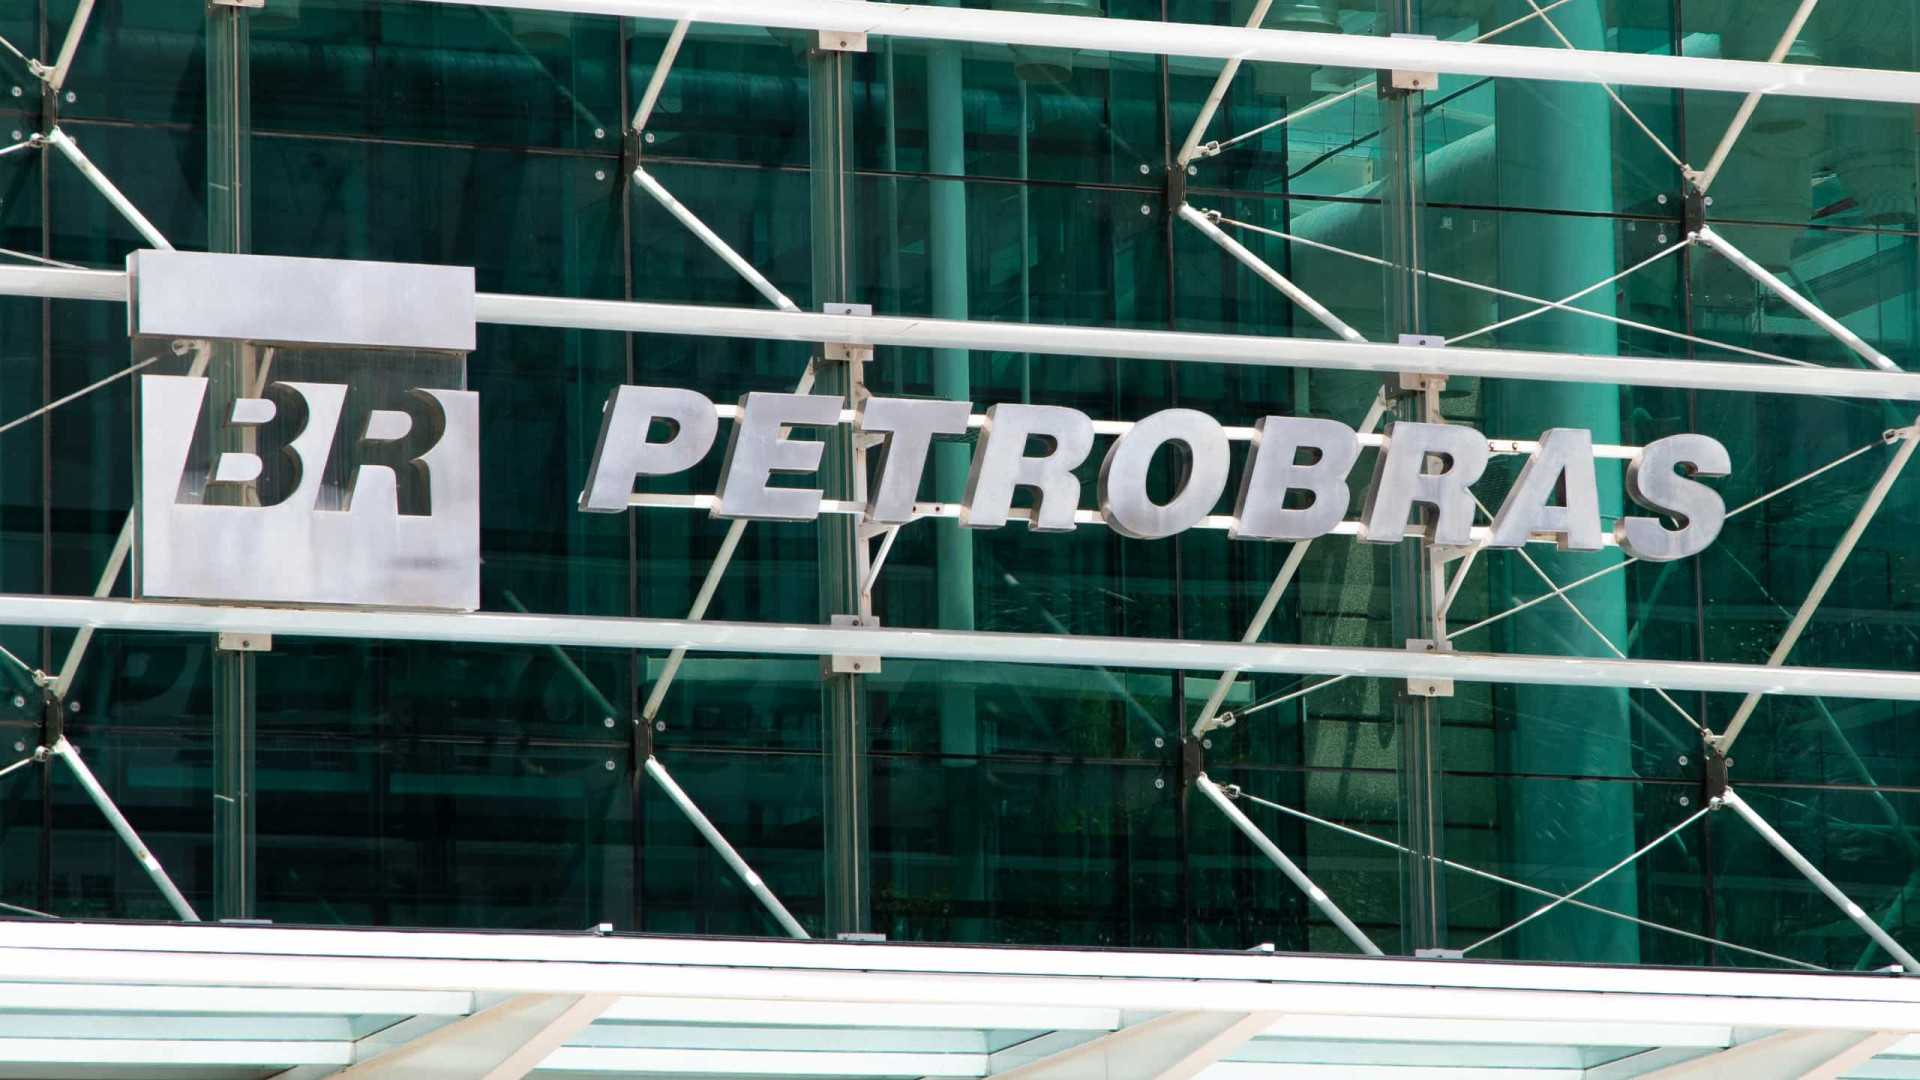 Cotado para Petrobras é suspeito de usar cargo no governo para vasculhar empresa